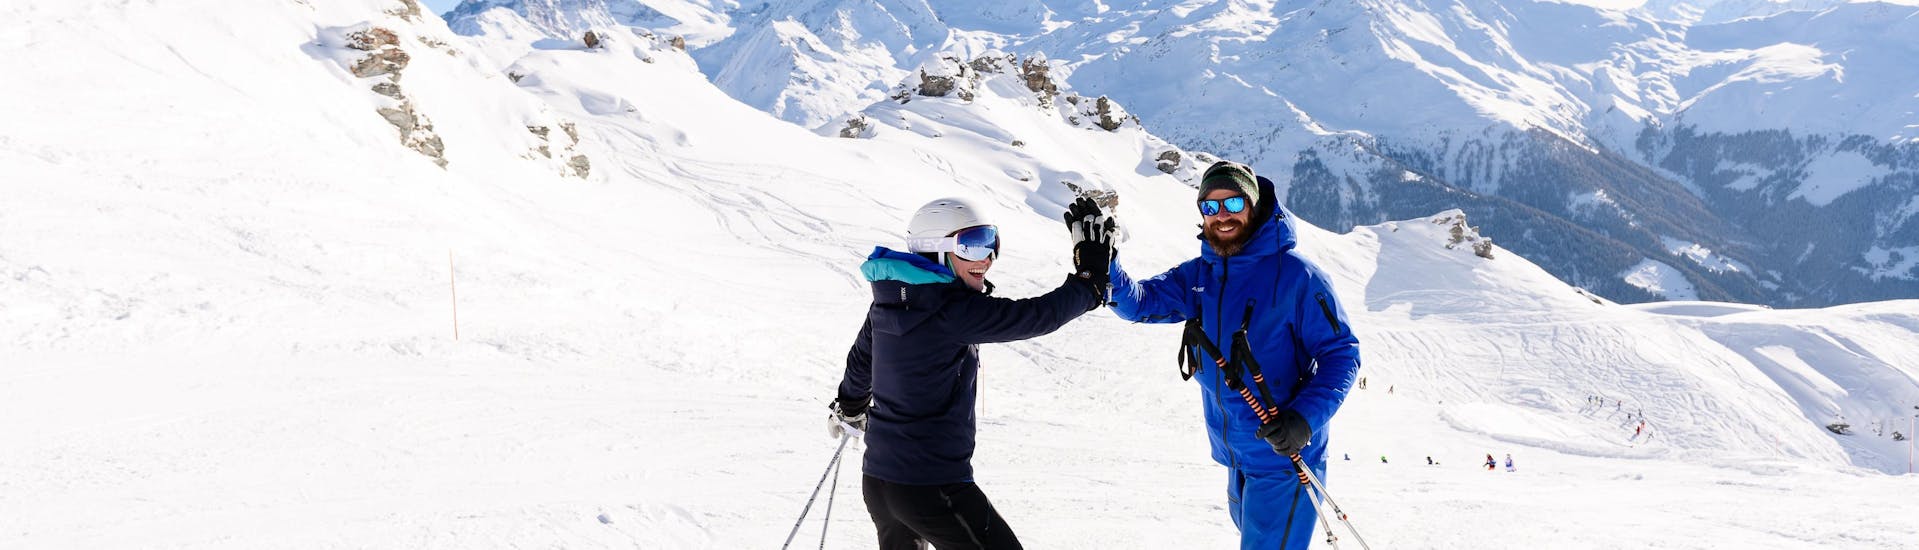 Privé skilessen voor volwassenen van alle niveaus in Andermatt.